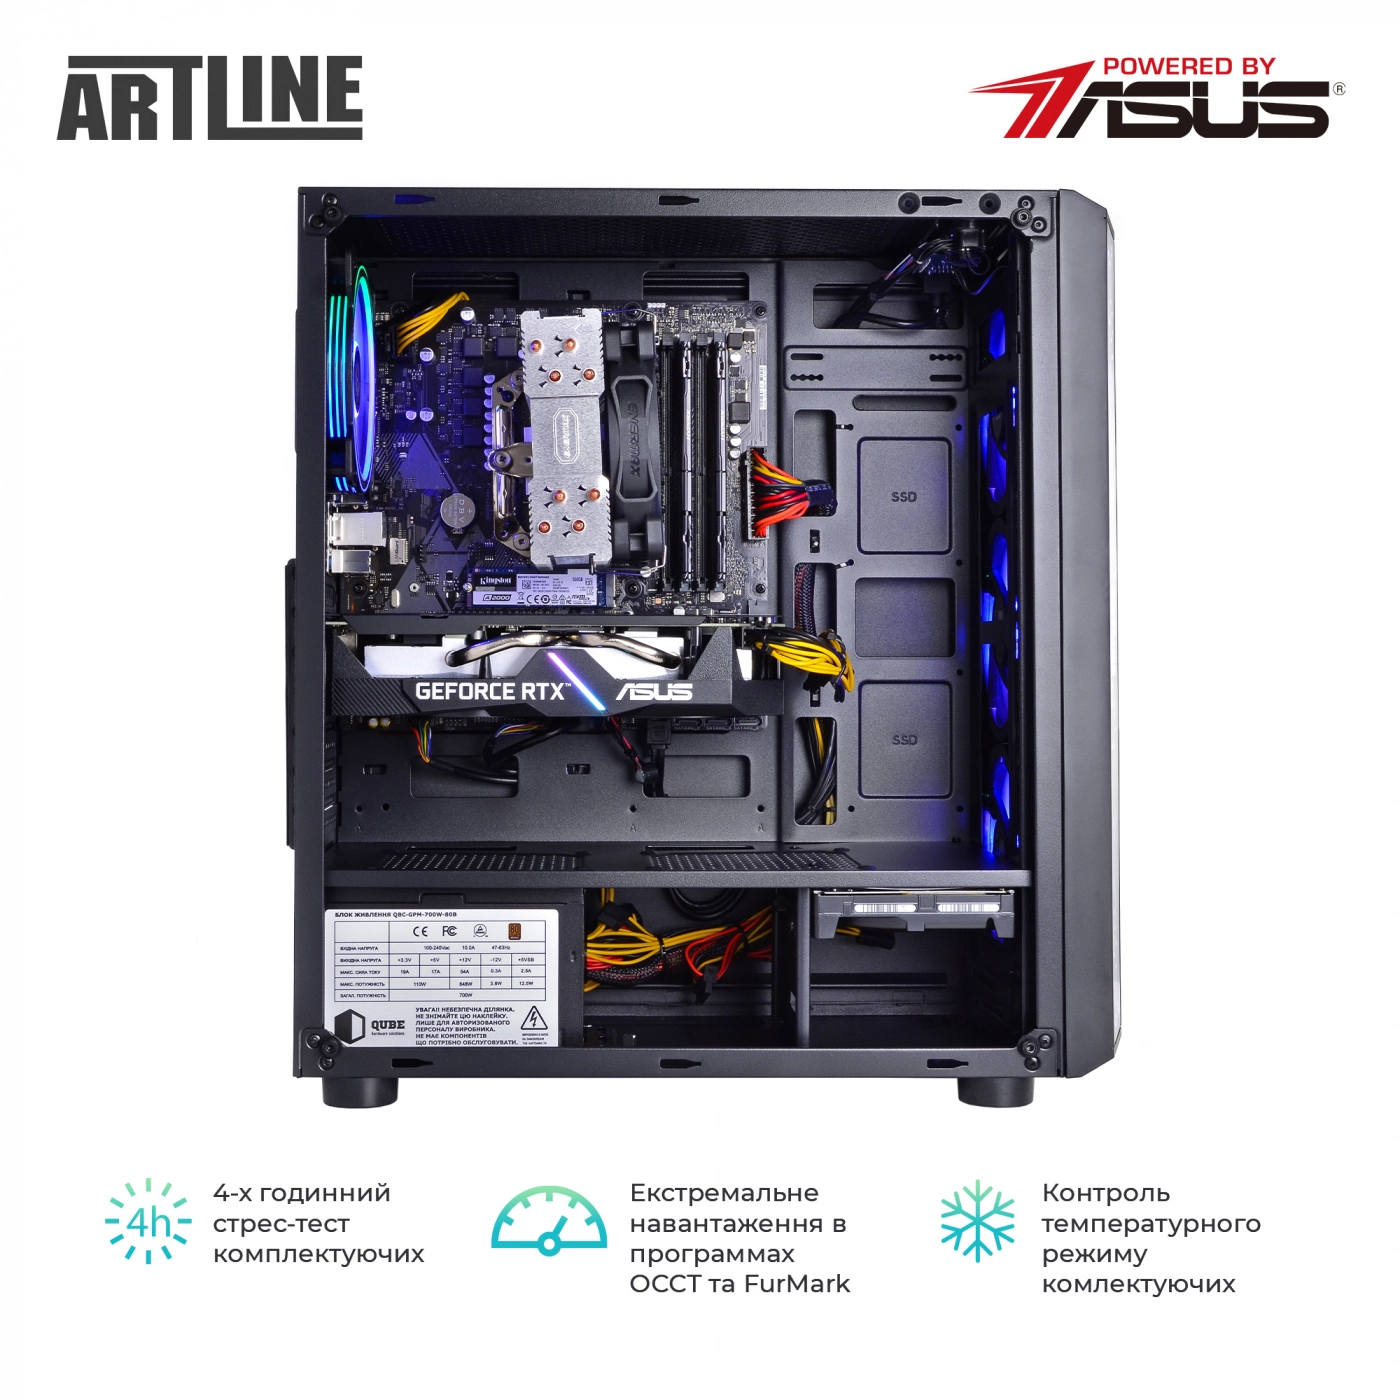 Купить Компьютер ARTLINE Gaming X77v44 - фото 9